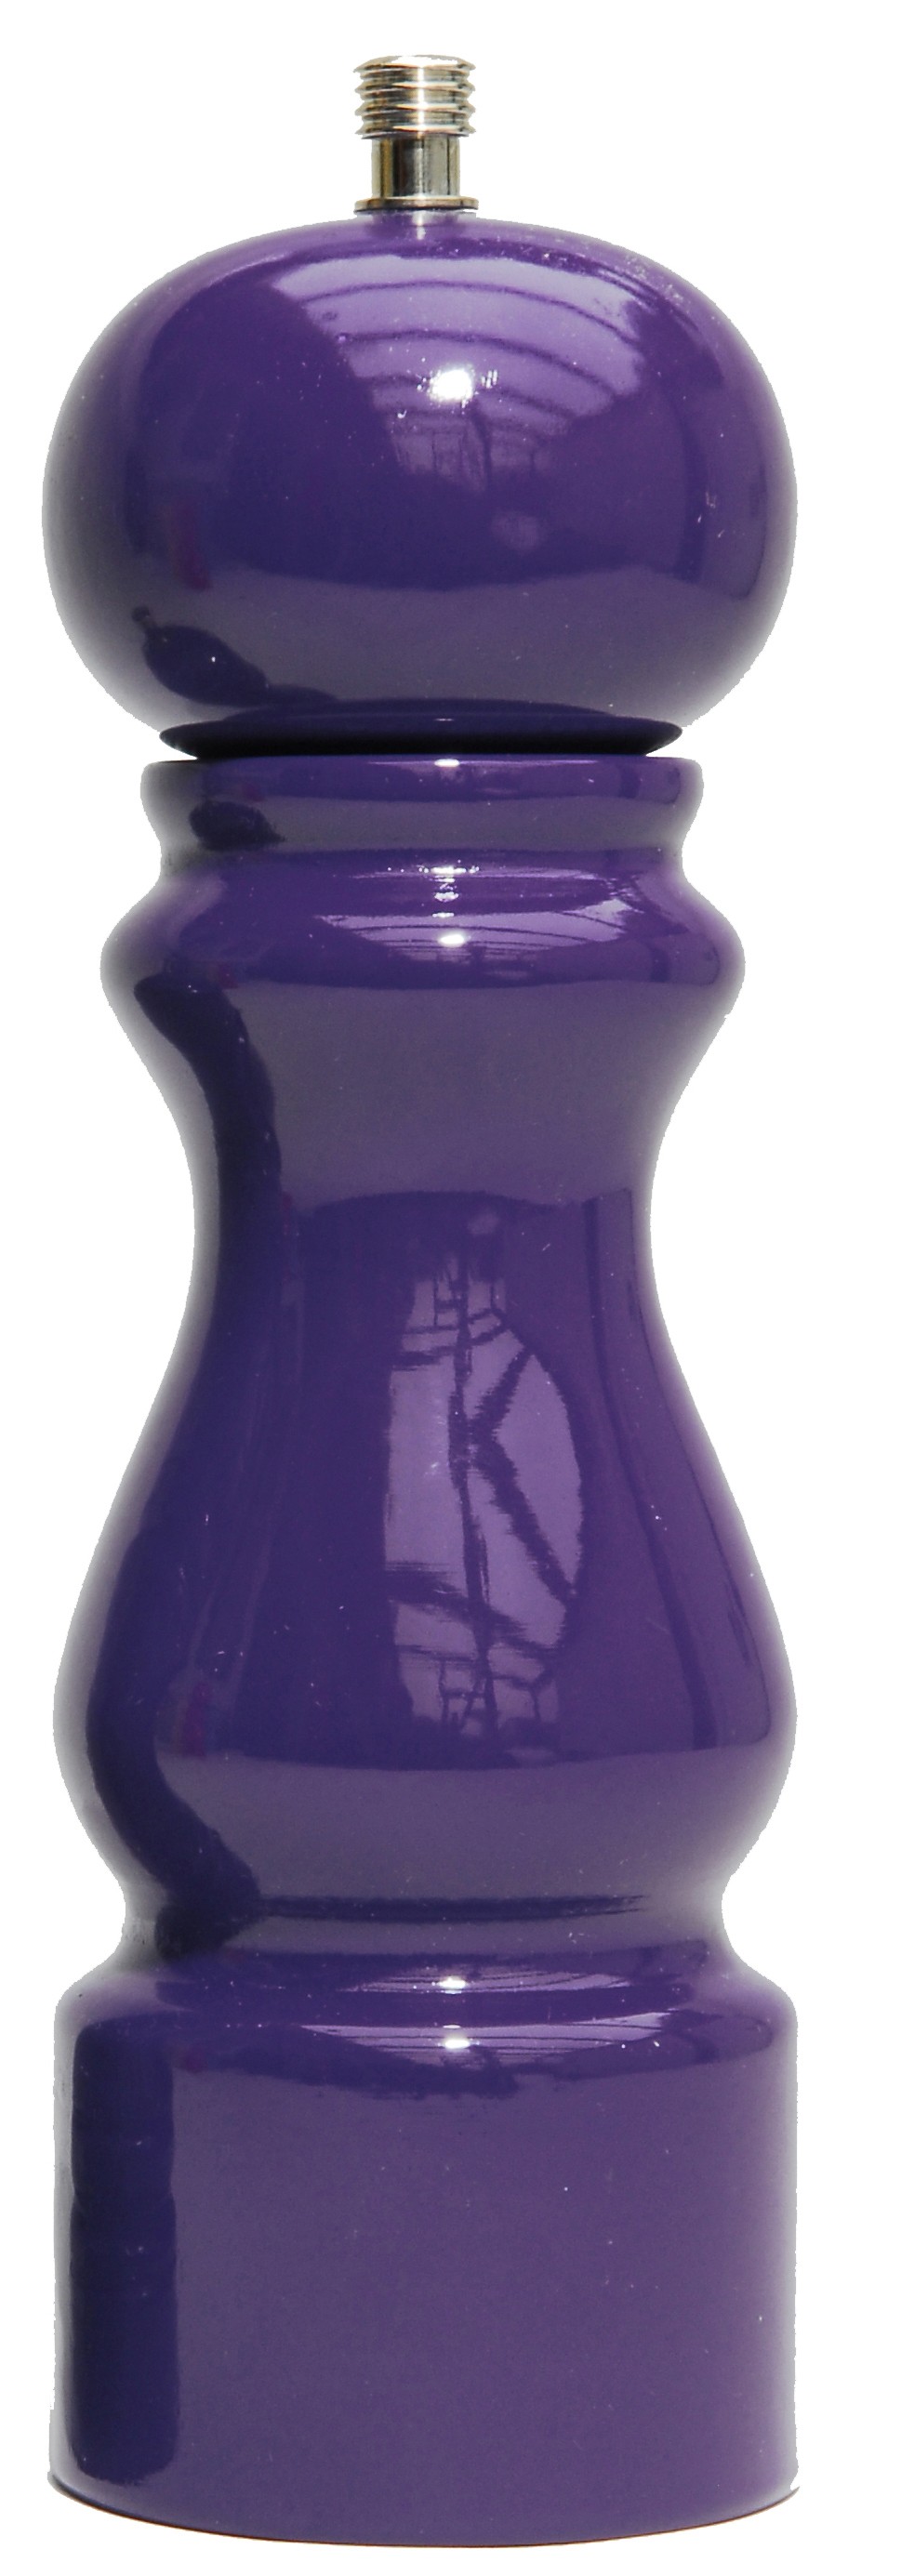 Colors - Moulin à gros sel  laqué brillant violet 20cm